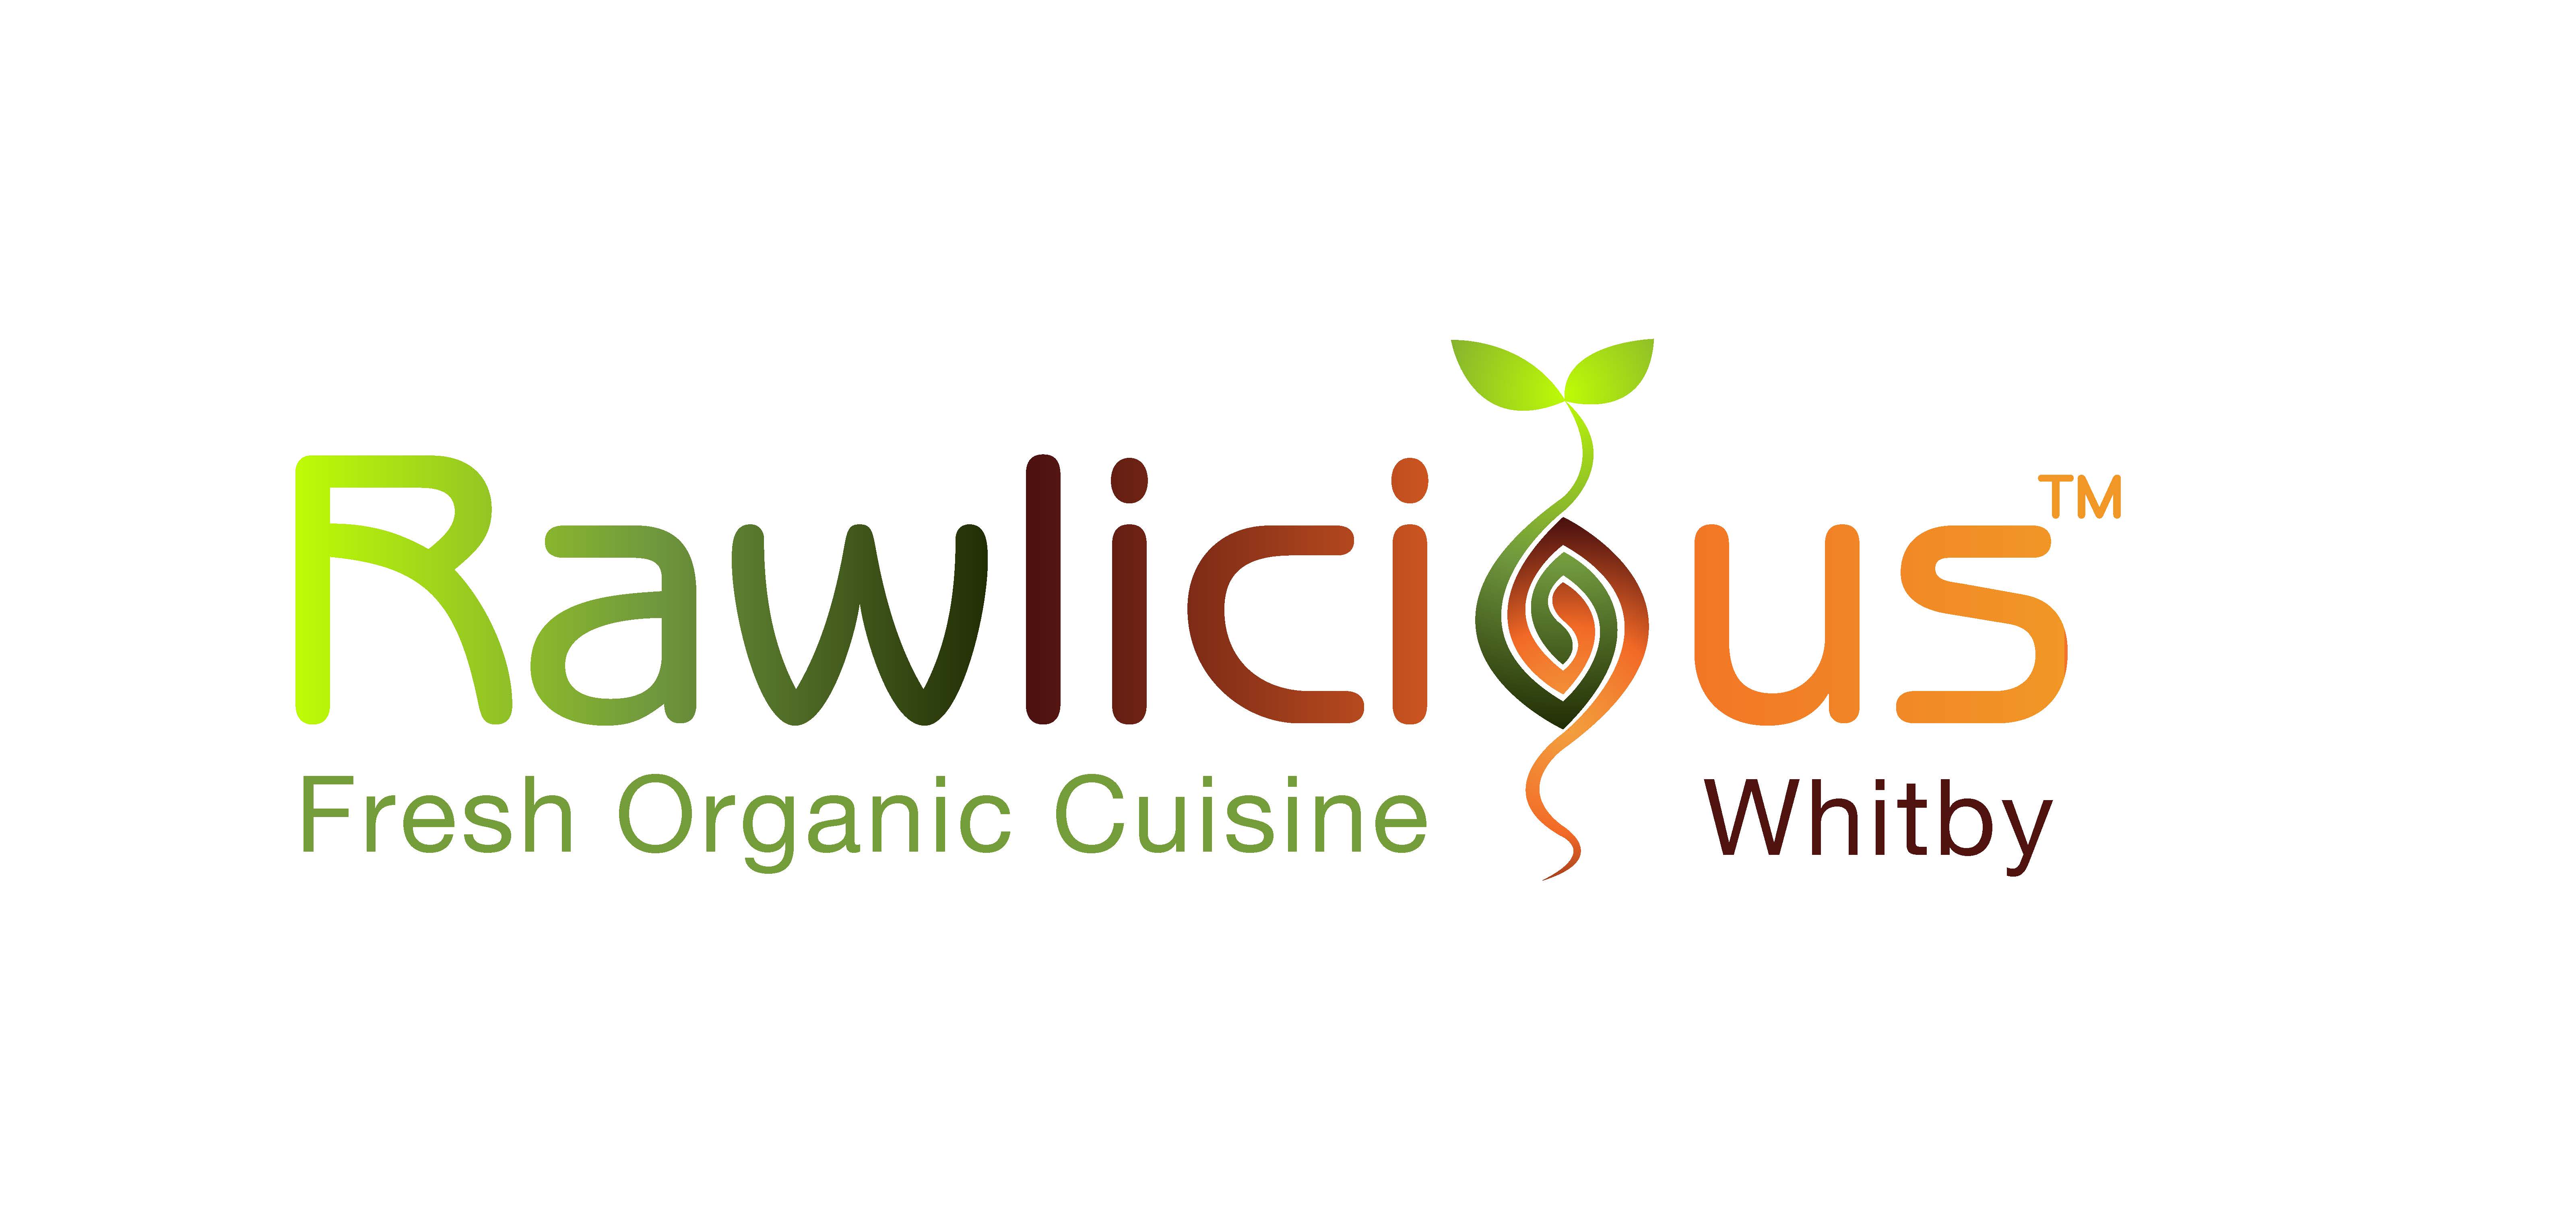 Rawlicious Whitby logo